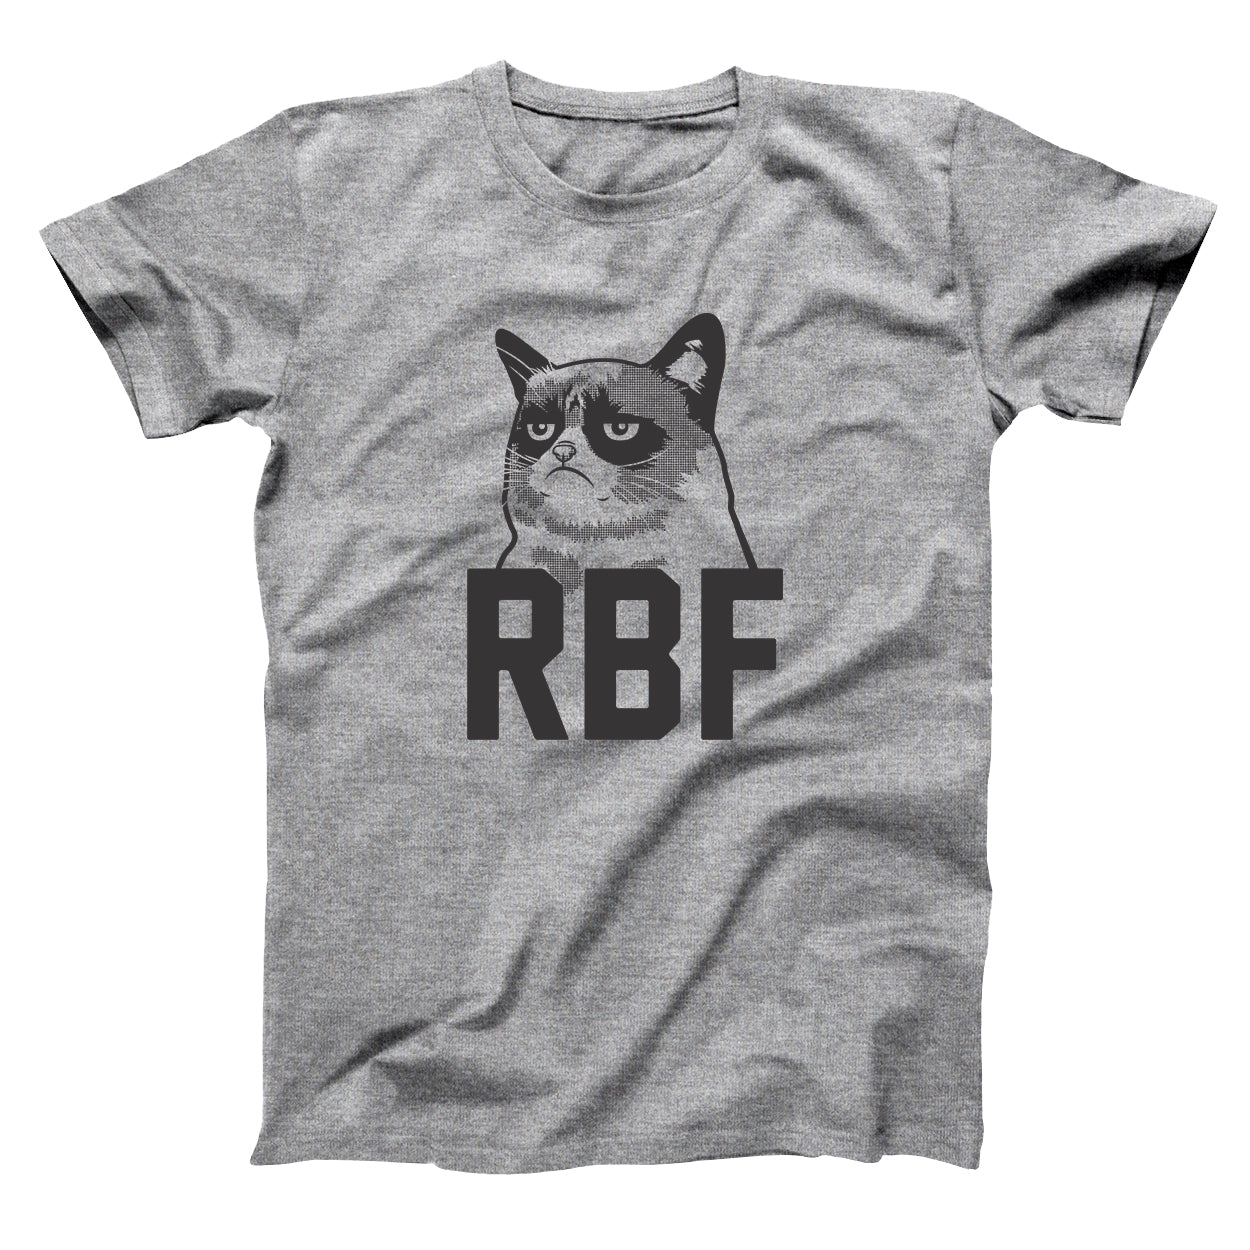 Rbf cat Tshirt - Donkey Tees